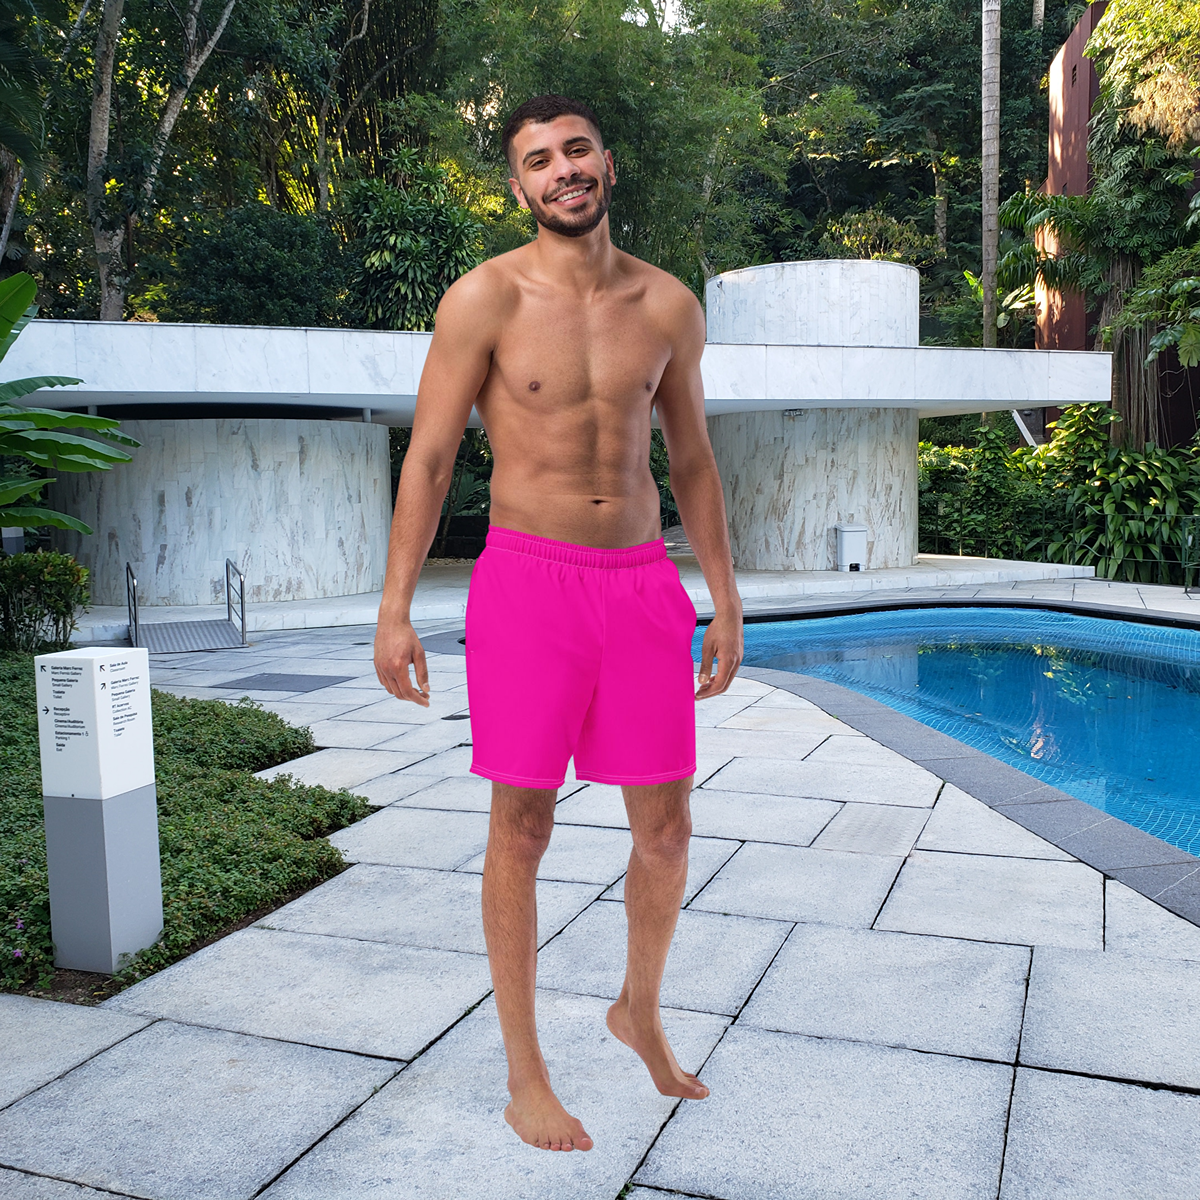 Hot Pink Men's Swim Trunks